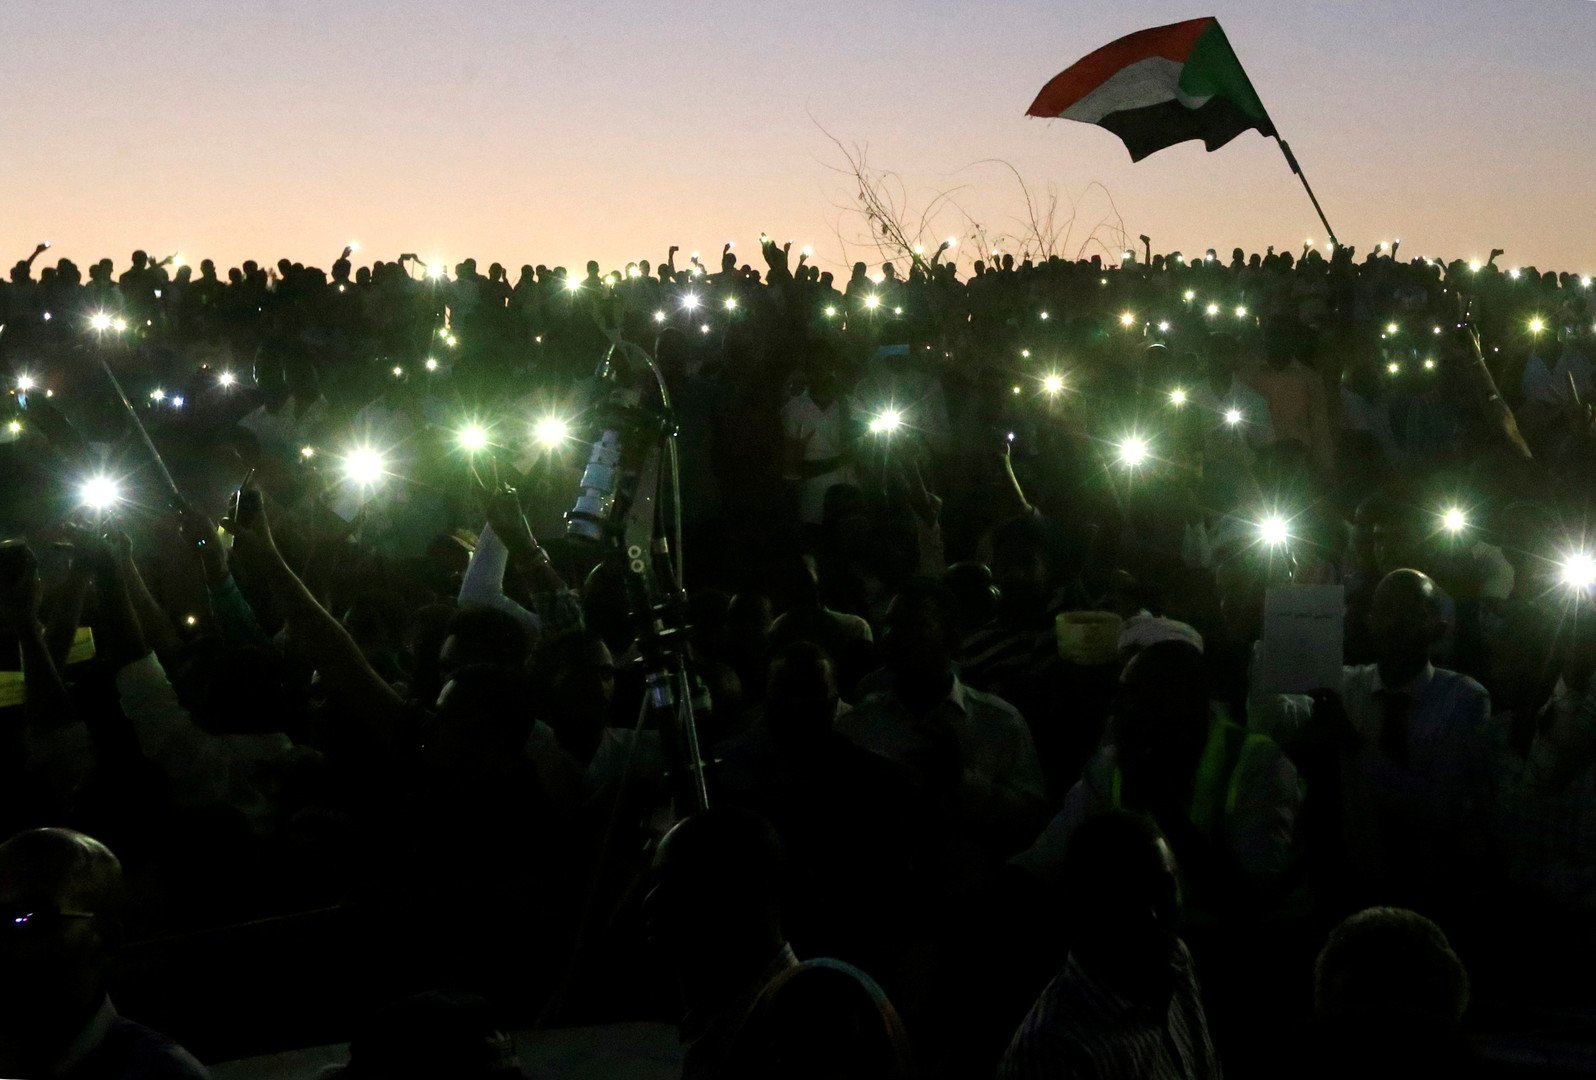 قادة المحتجين في السودان: سنعلن تشكيلة هيئة سلطة مدنية خلال أيام ولن نقبل تمديد حكم العسكر